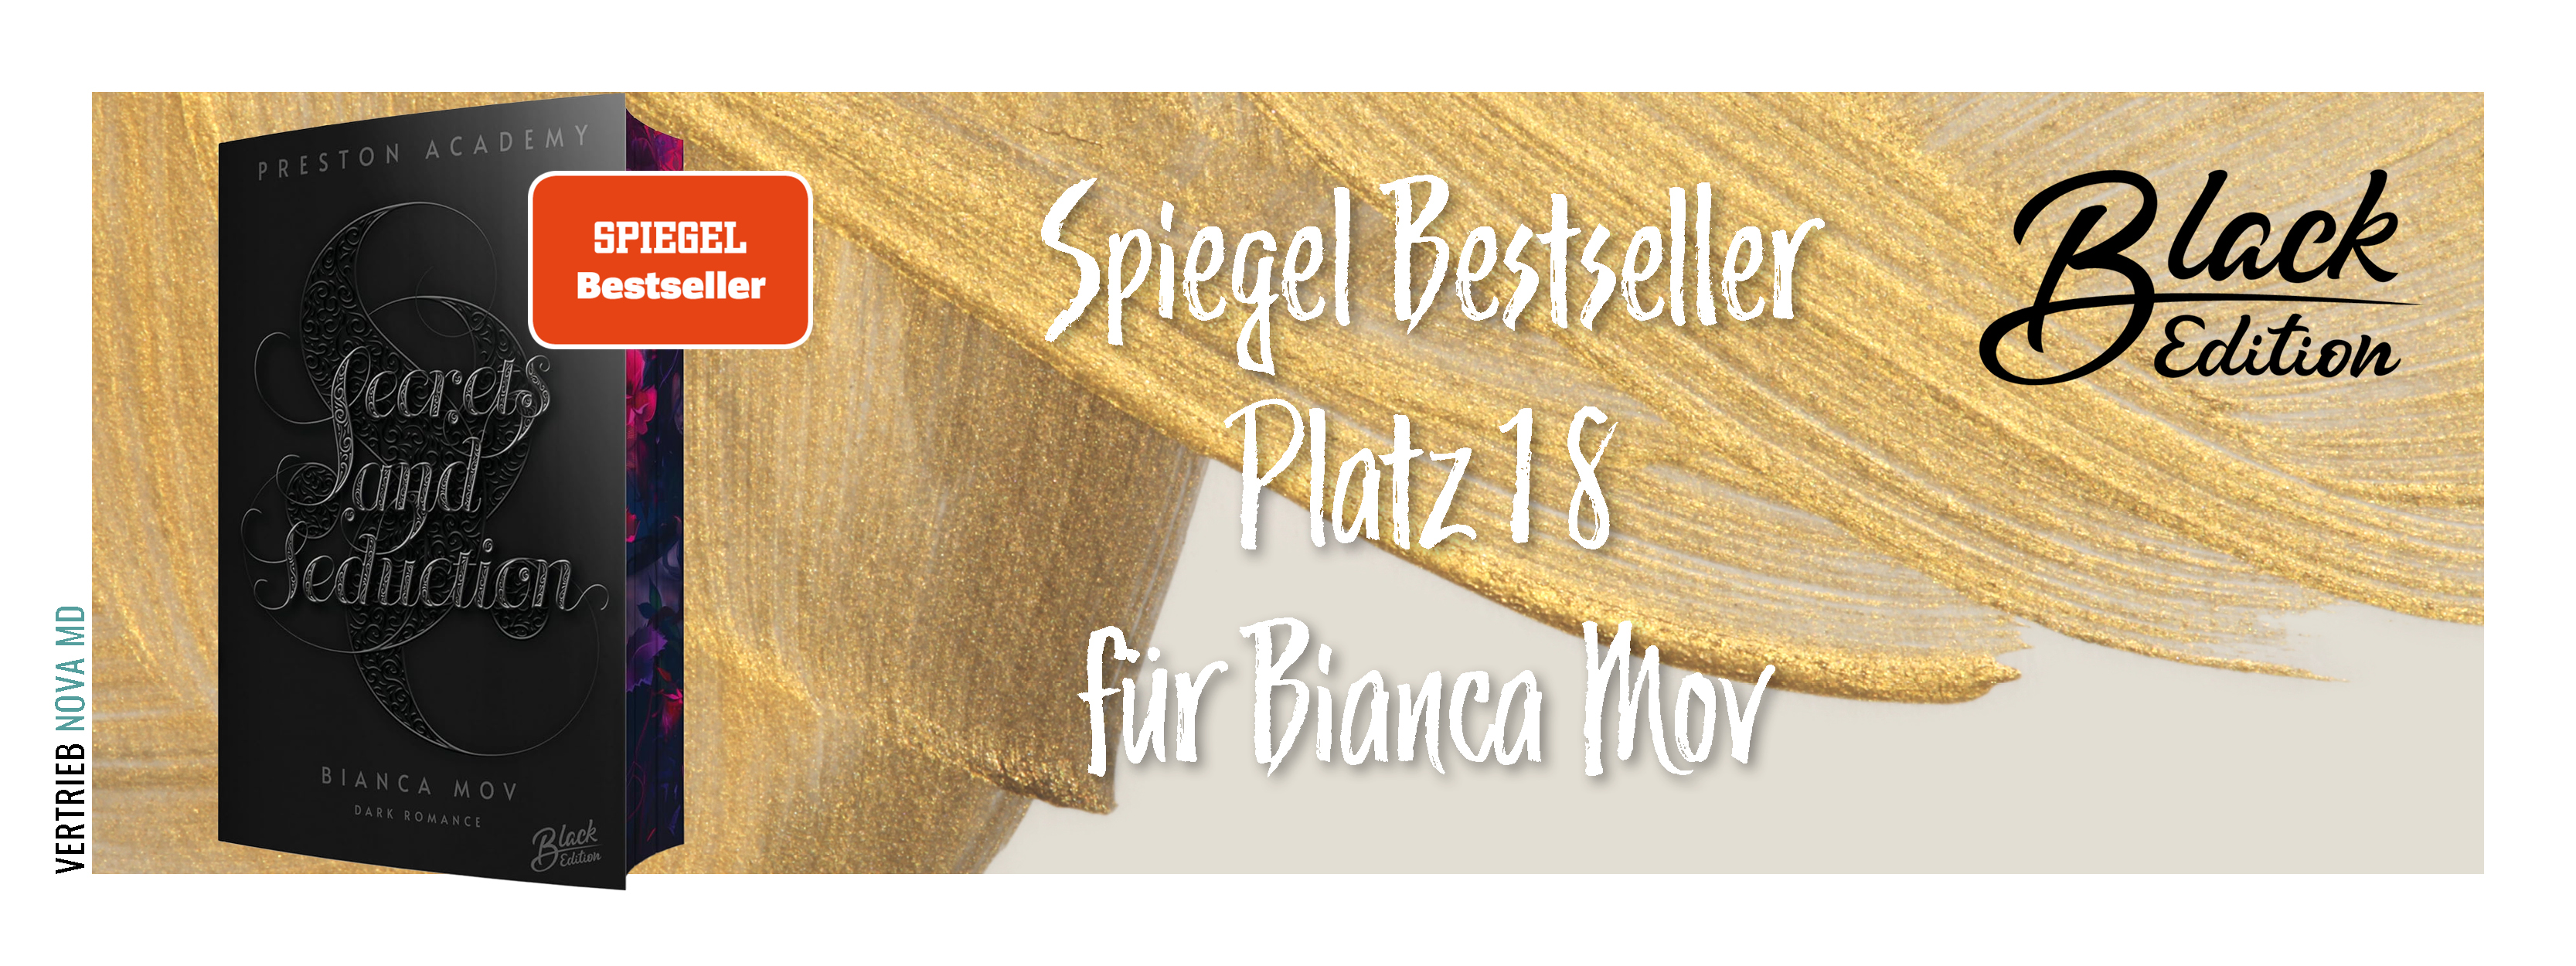 Bekanntgabe SPIEGEL-Bestseller für &quot;Secrets and Seduction&quot; von Bianca Mov mit Abbildung des Buches vor goldenem Hintergrund